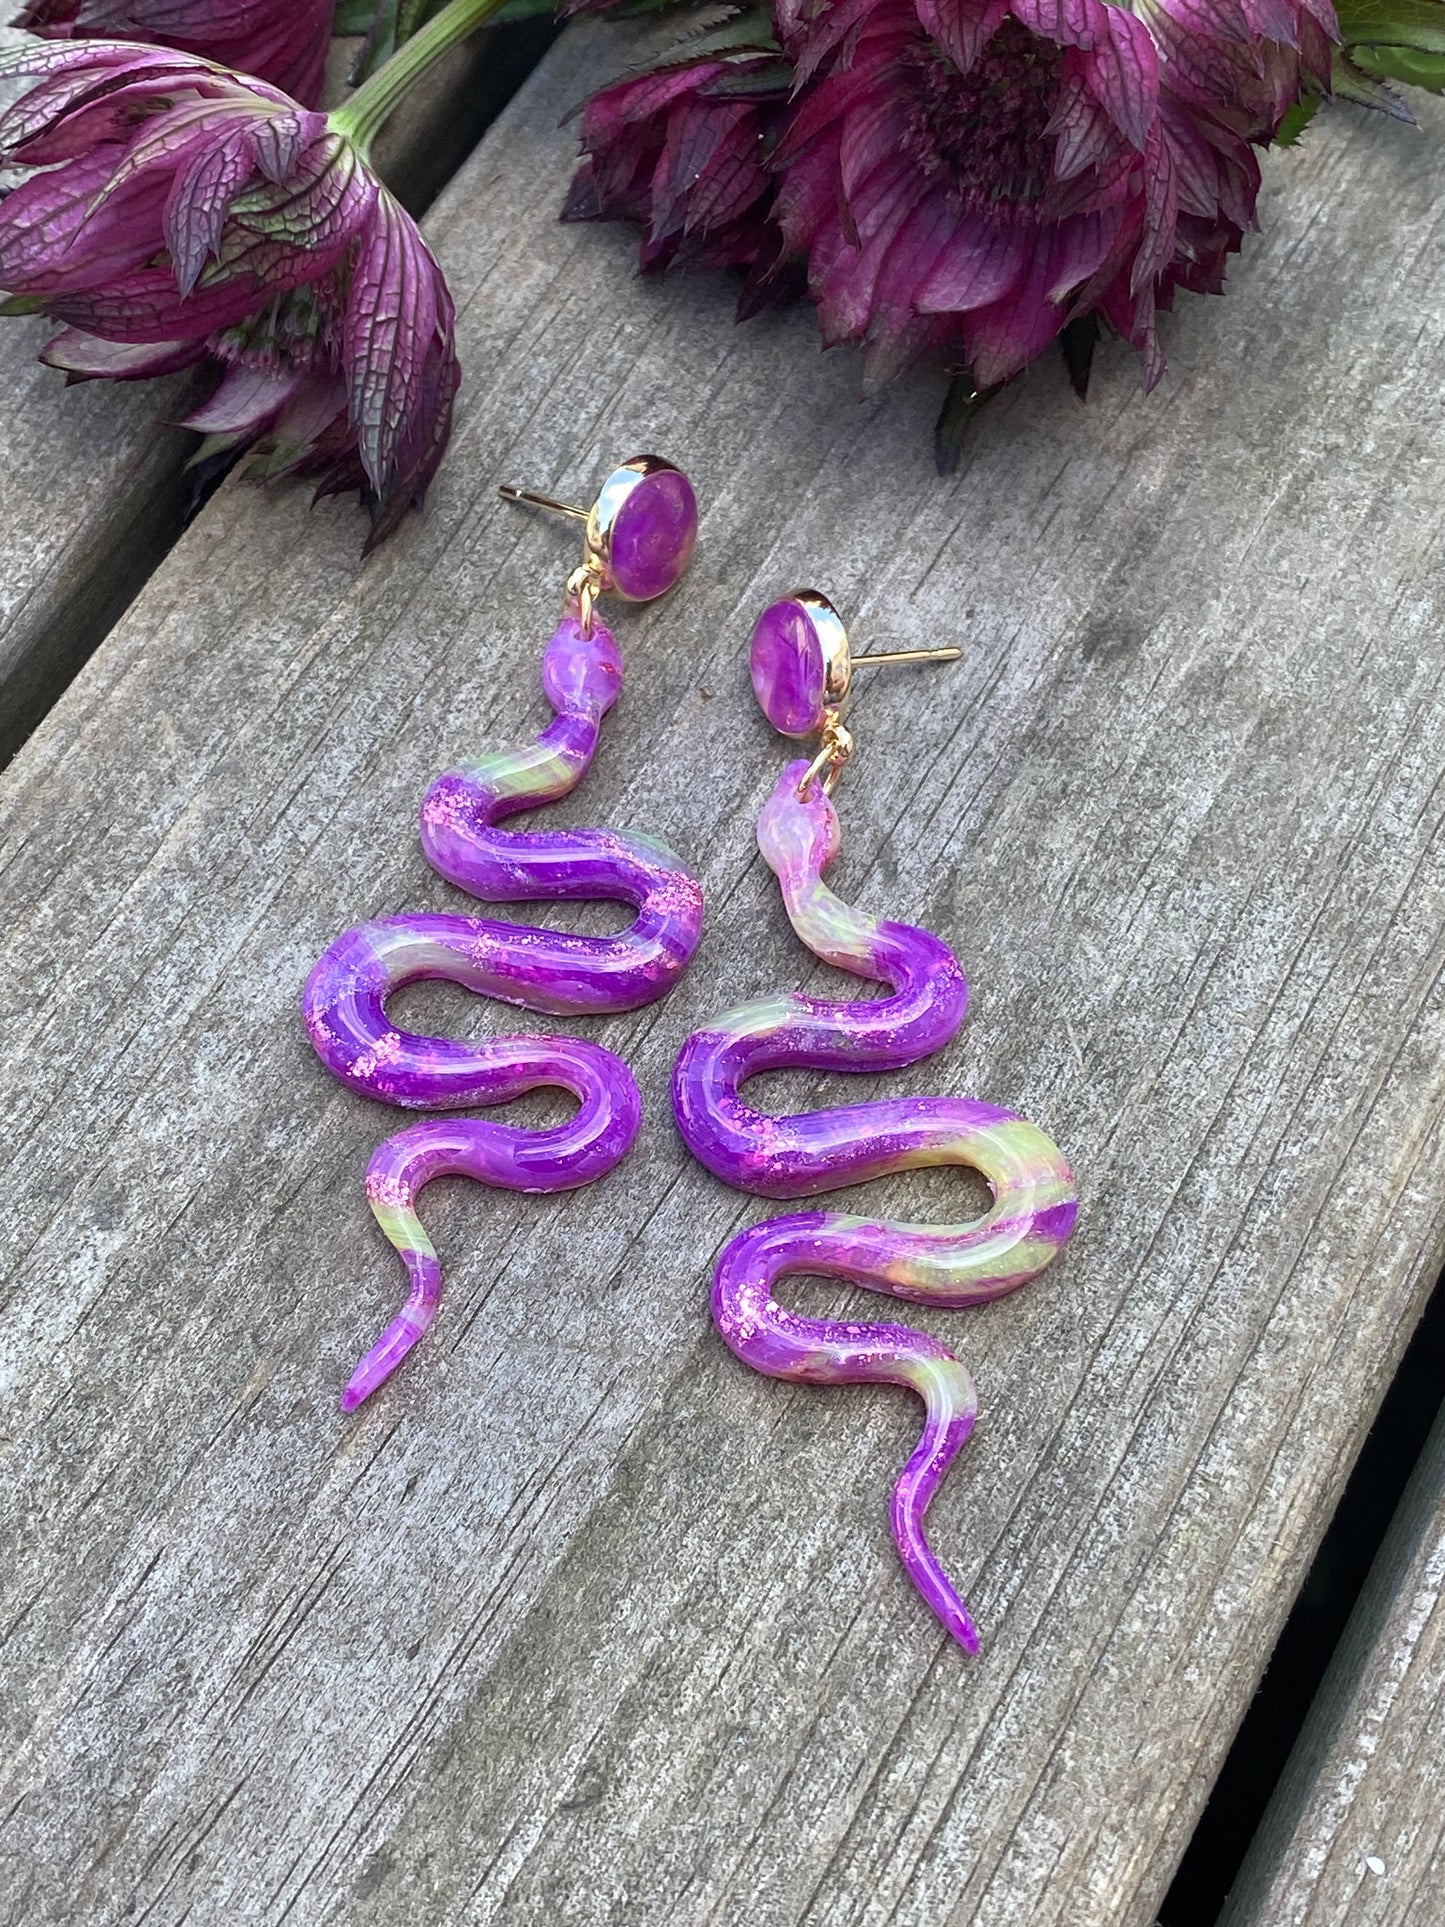 Fargeelsk-lilla slanger